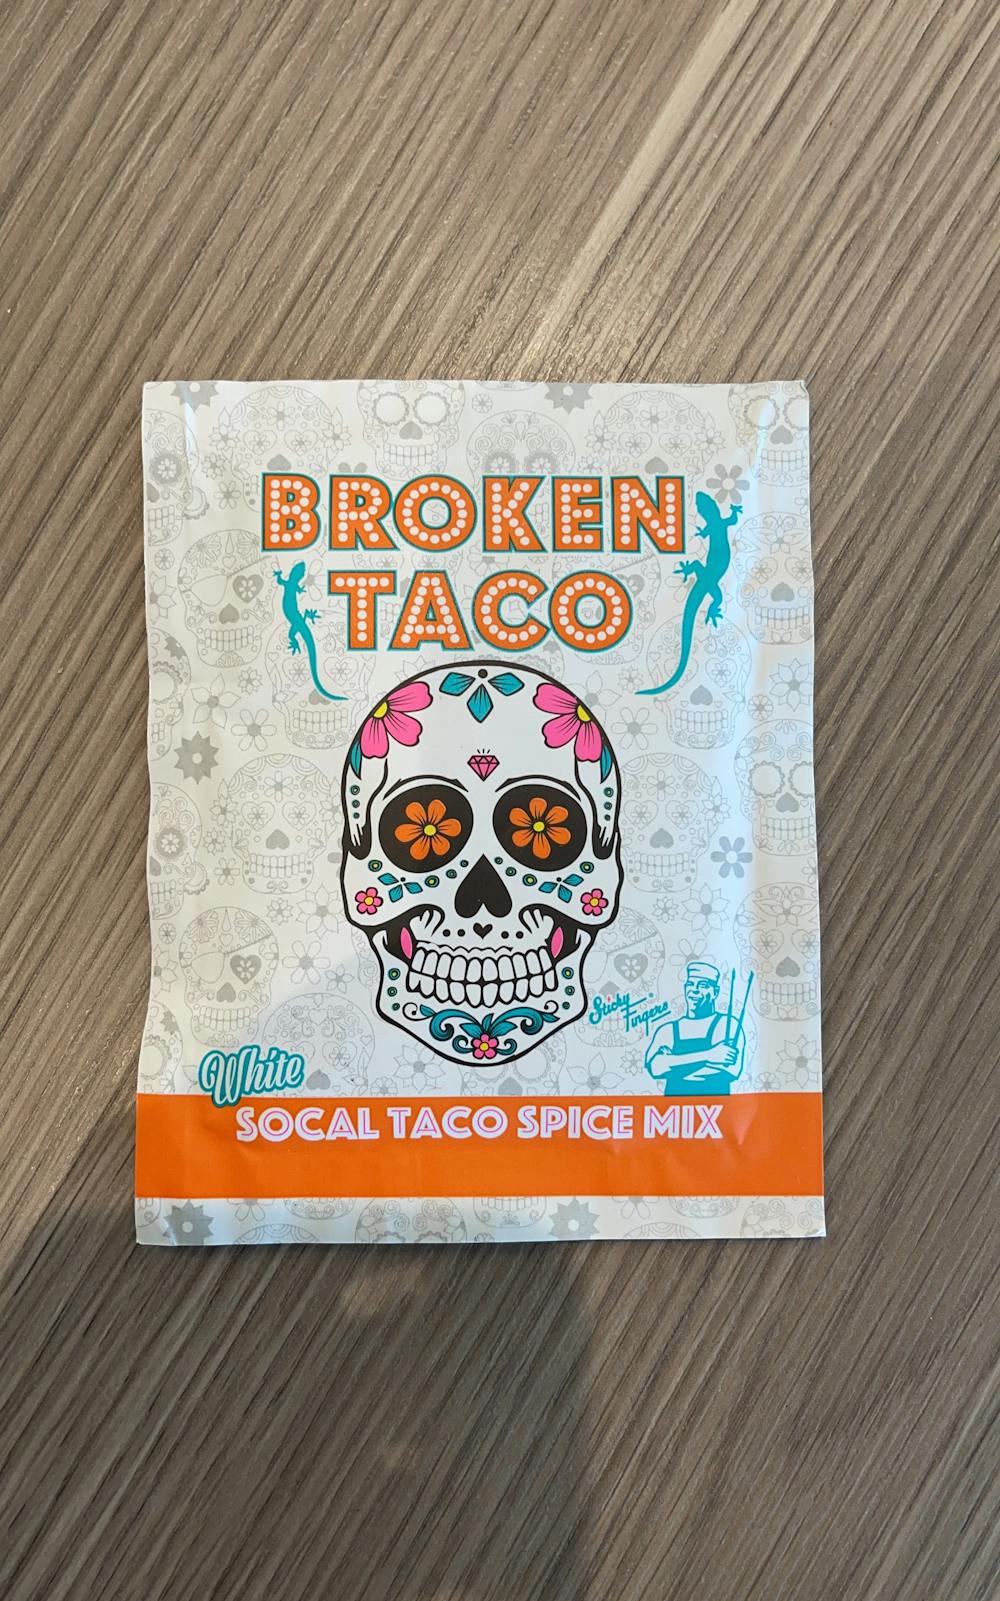 Social taco spice mix, Broken taco